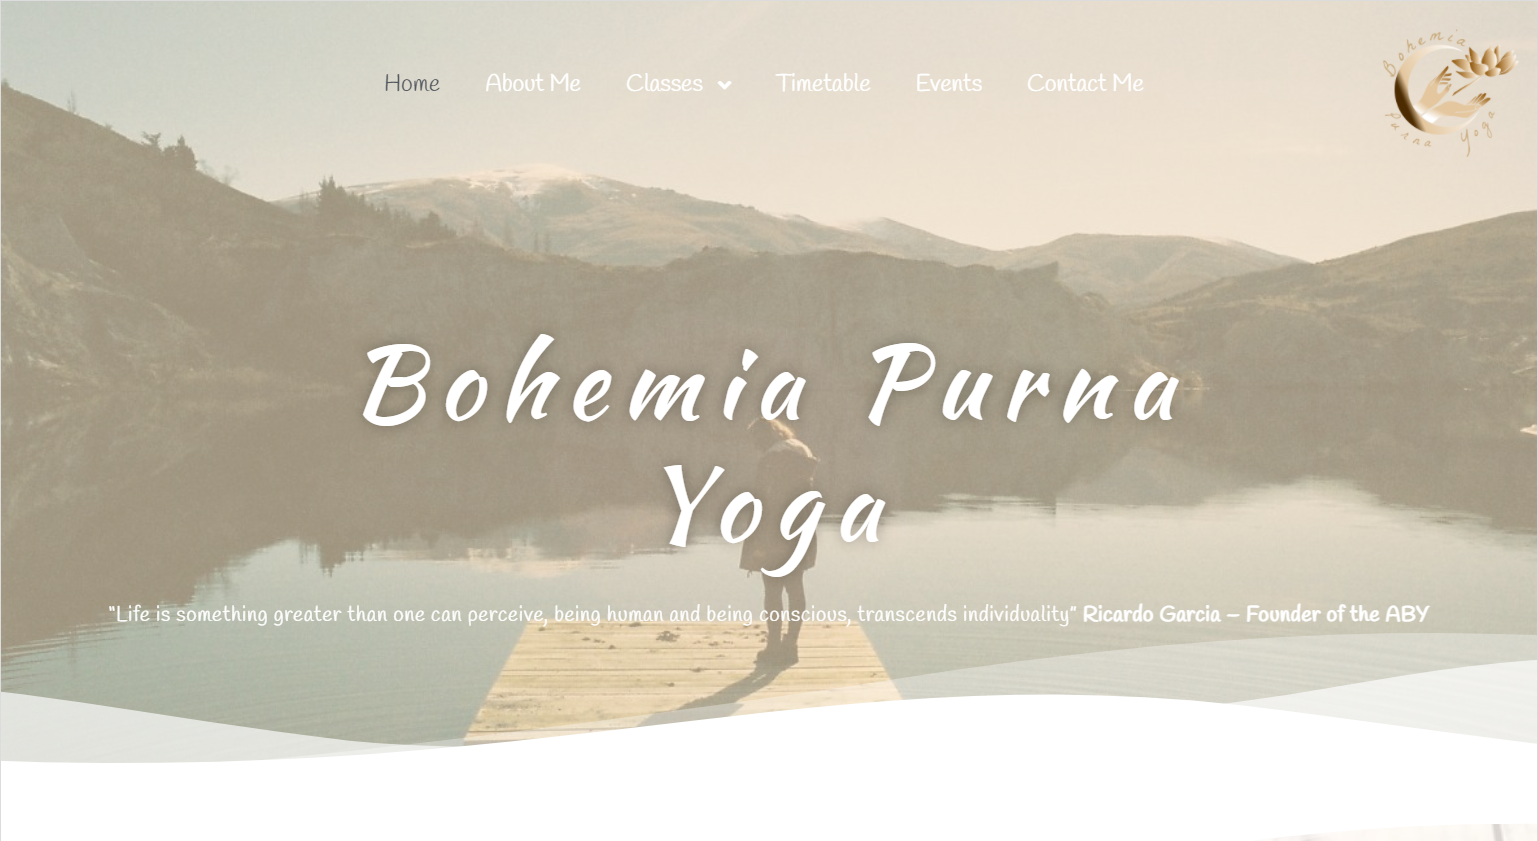 Bohemia Purna Yoga